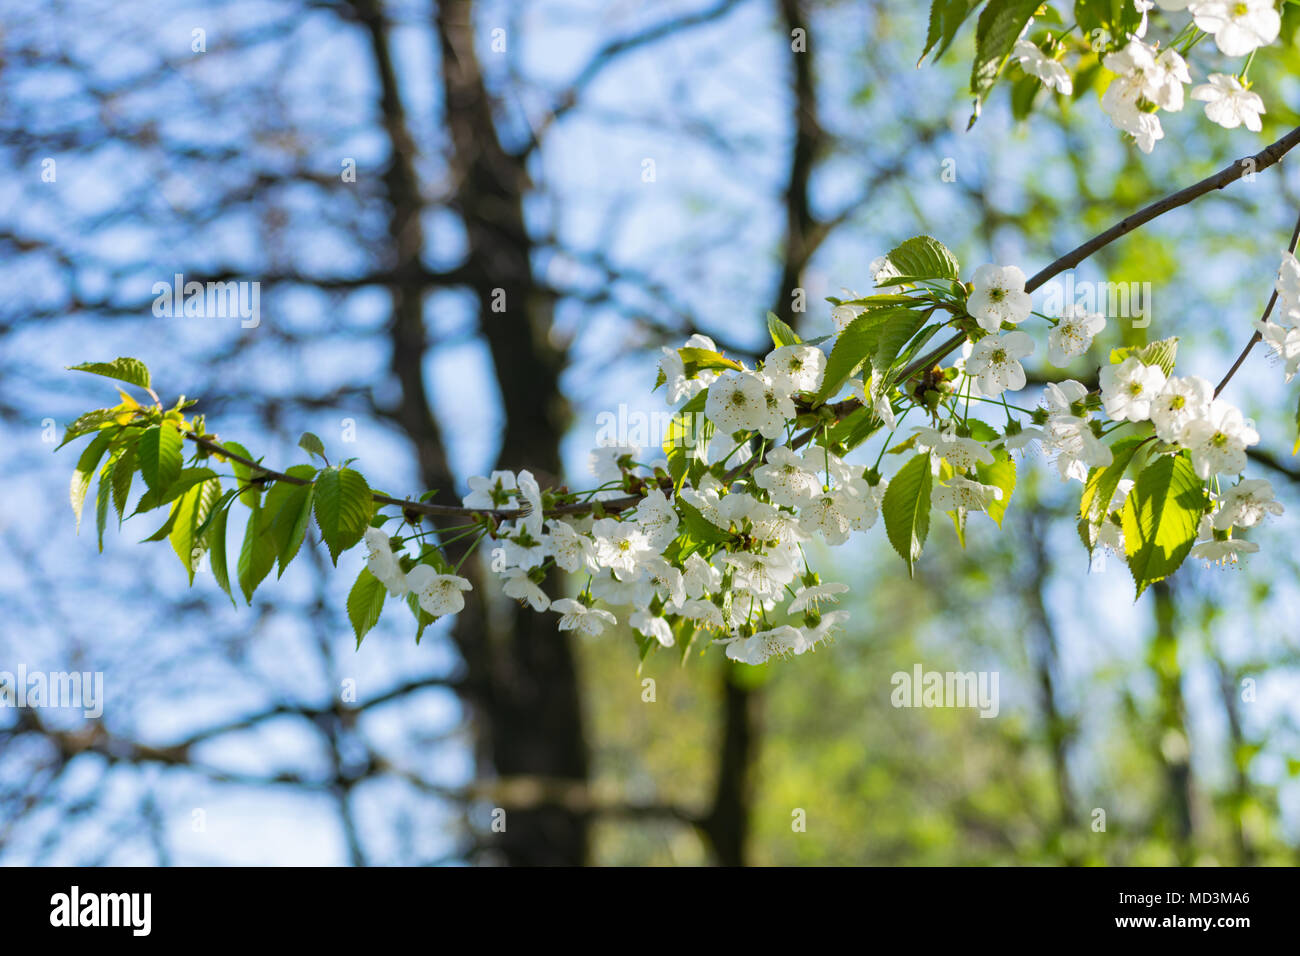 Głębowice, Polen. April 18, 2018. Kirsche (Prunus avium L.). Frühling sonniges Wetter. Die Kirschbäume in voller Pracht erblühen. Credit: W124 Merc/Alamy leben Nachrichten Stockfoto